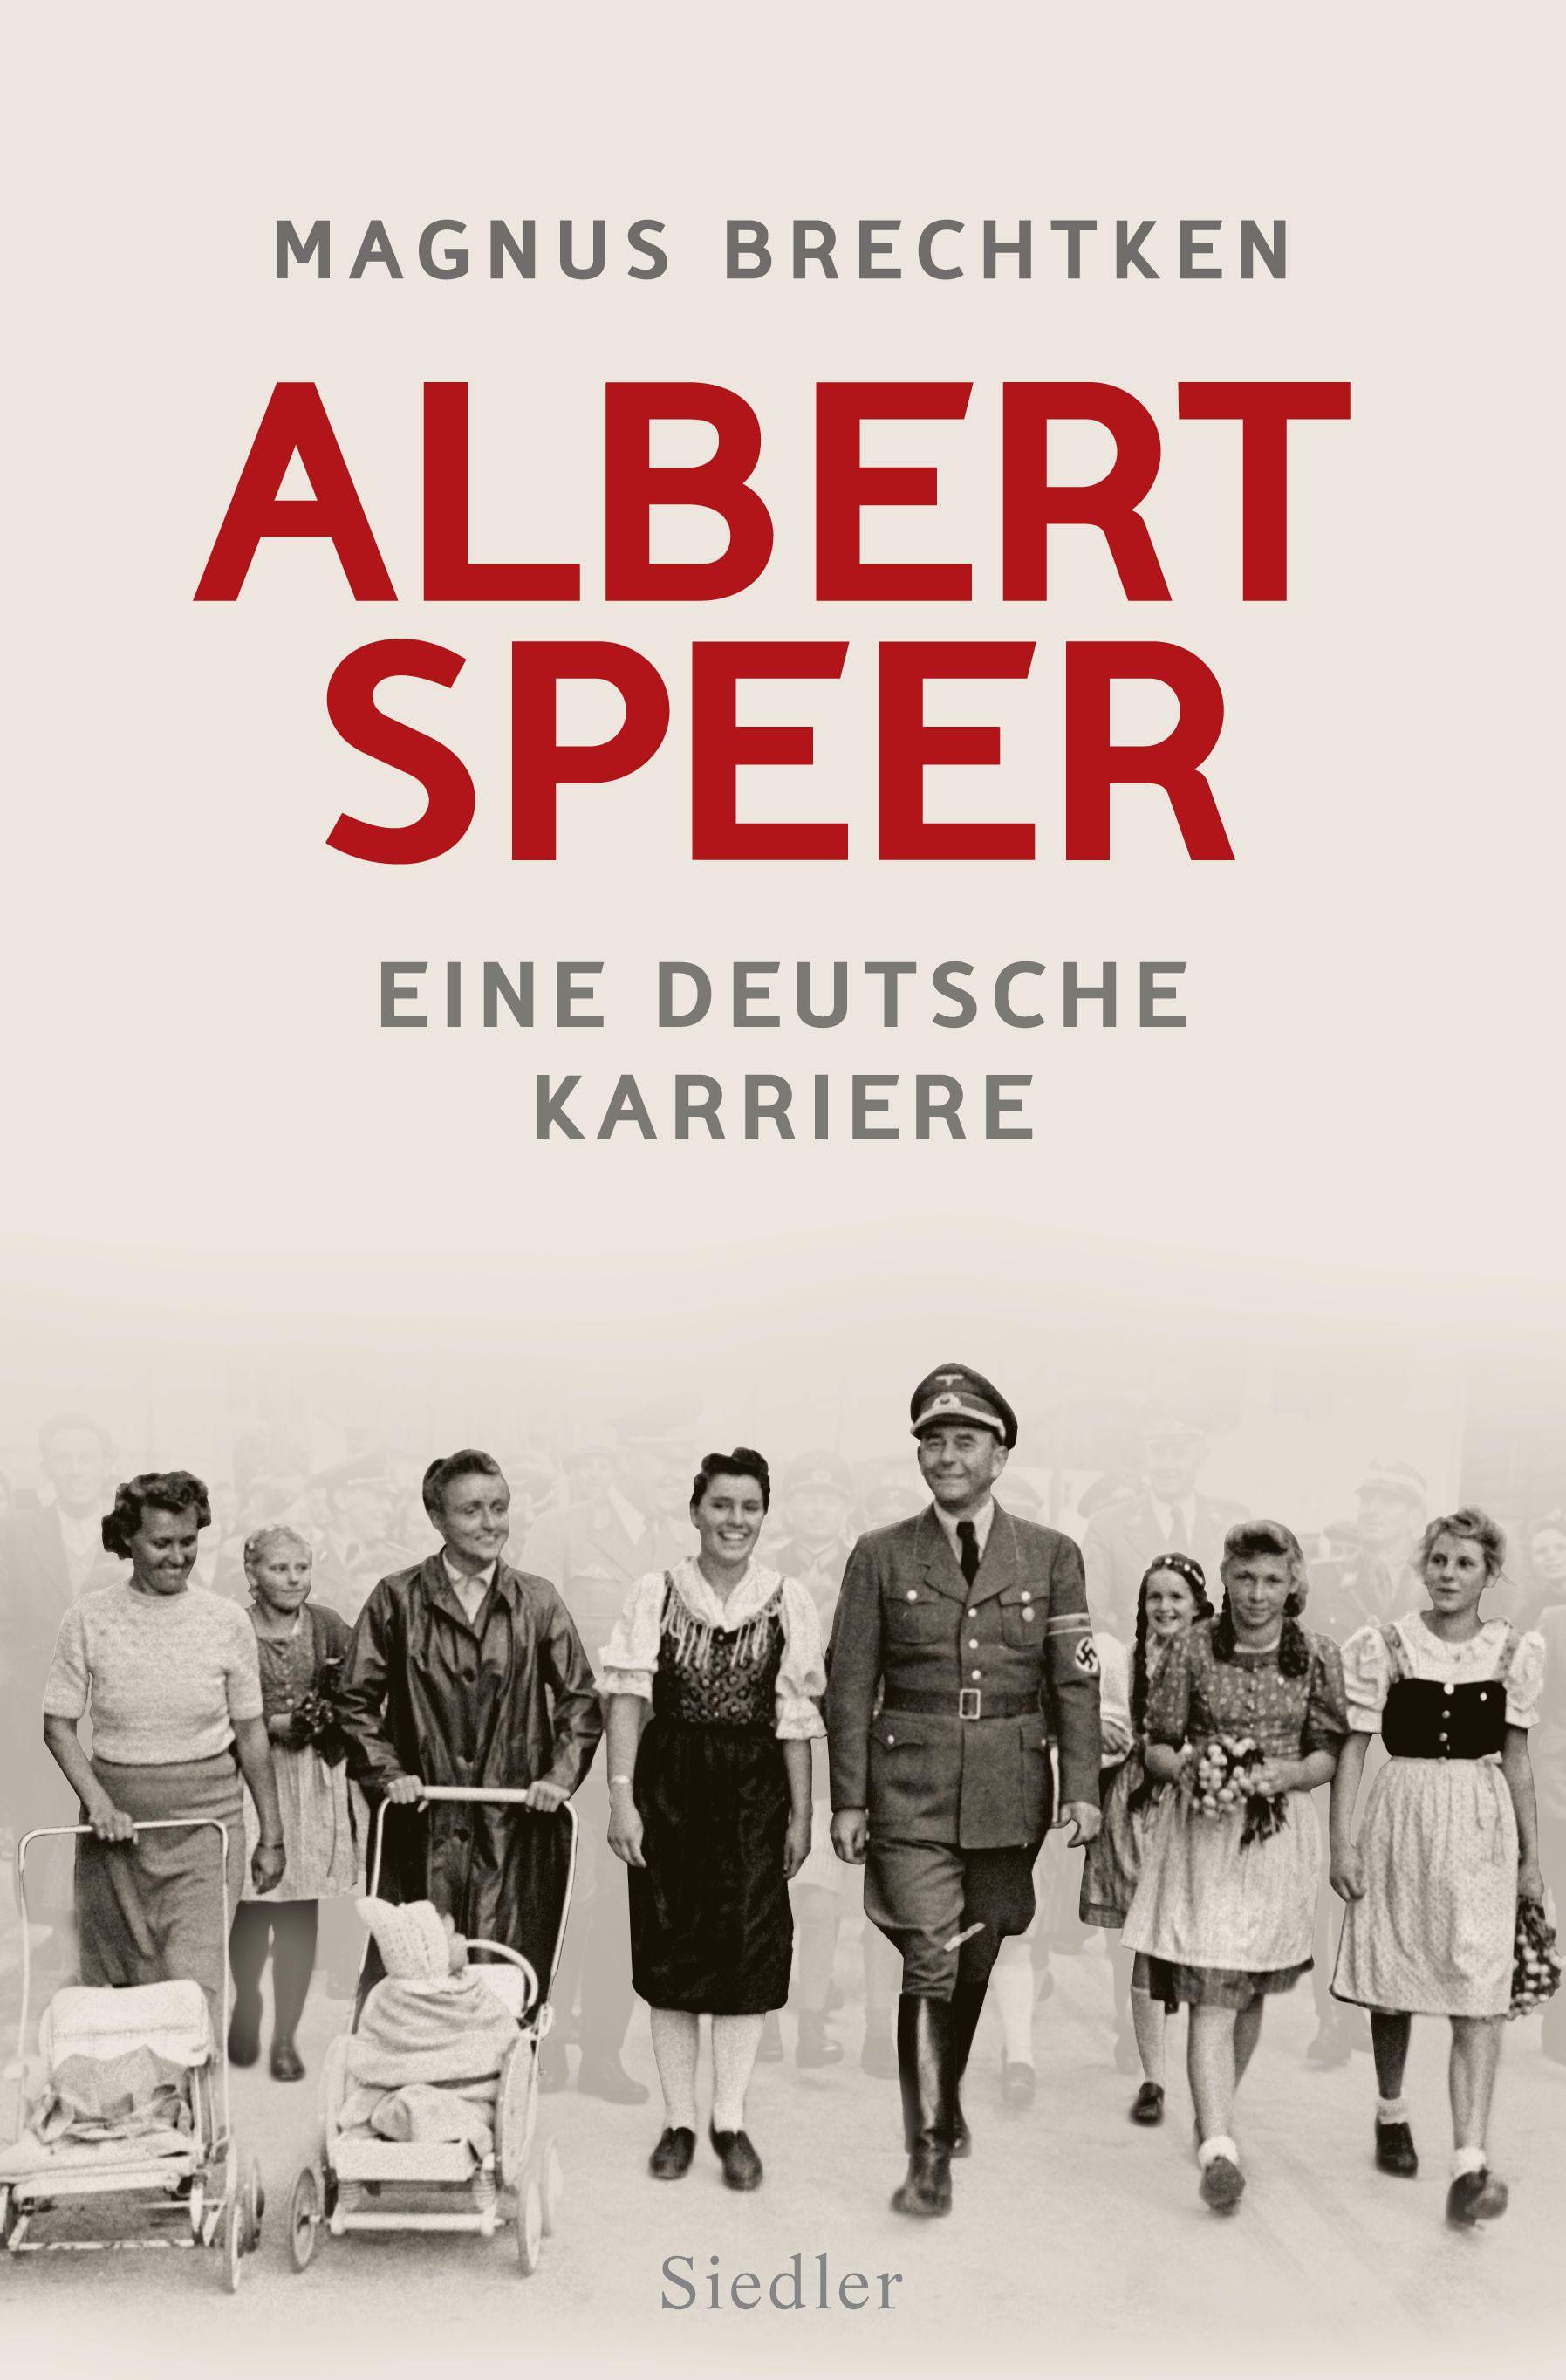 Buchcover: Magnus Brechtken:Albert Speer – Eine deutsche Karriere